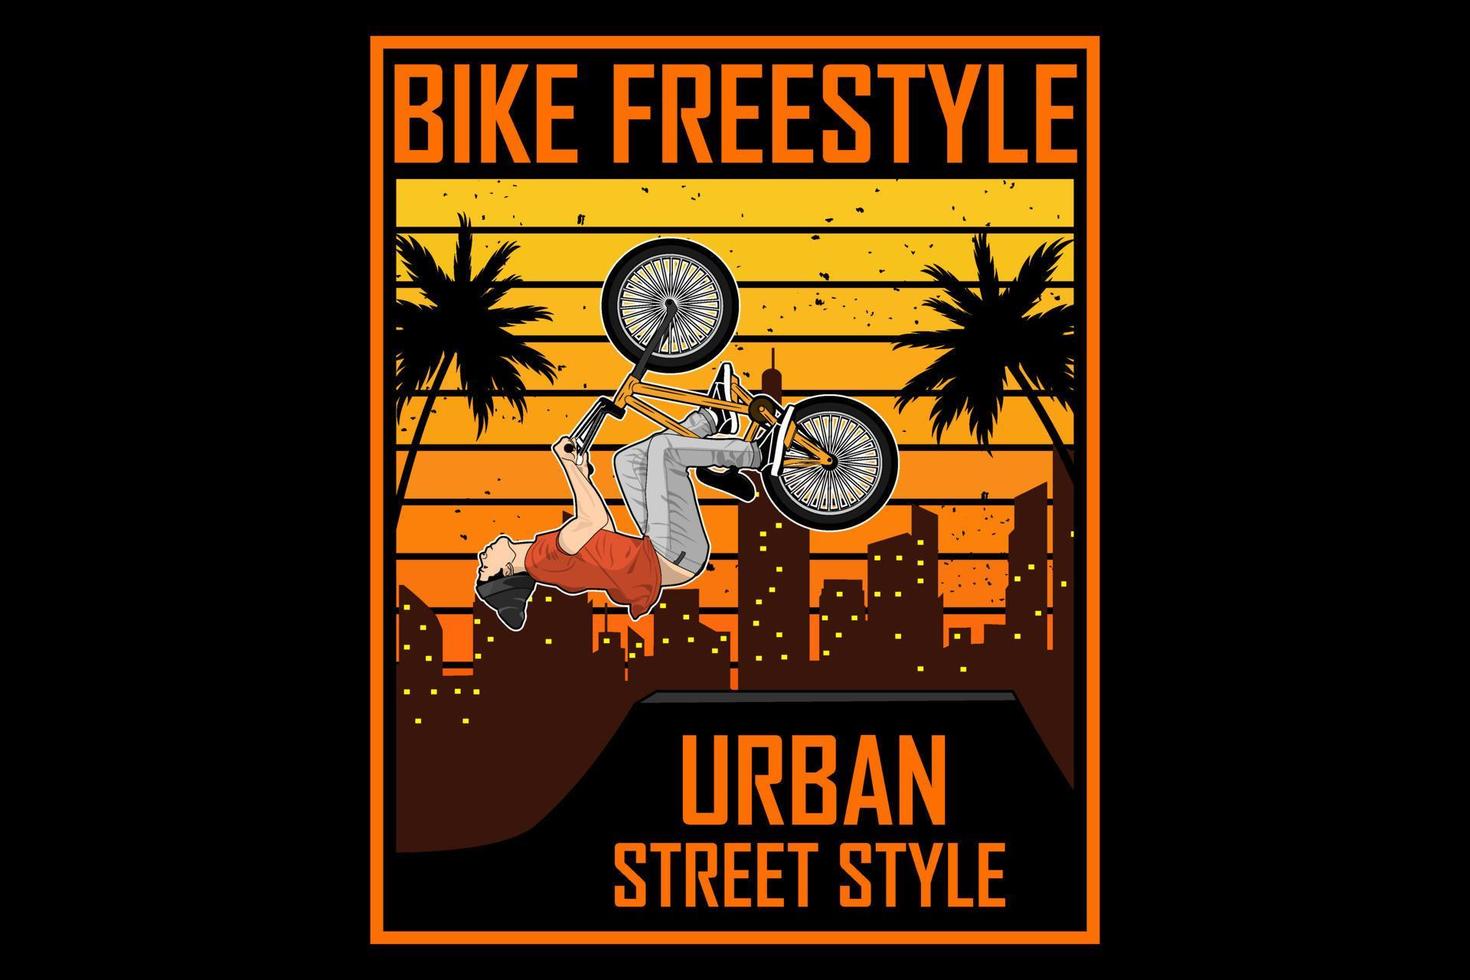 bicicleta estilo libre urbano estilo de la calle diseño silueta vintage retro vector